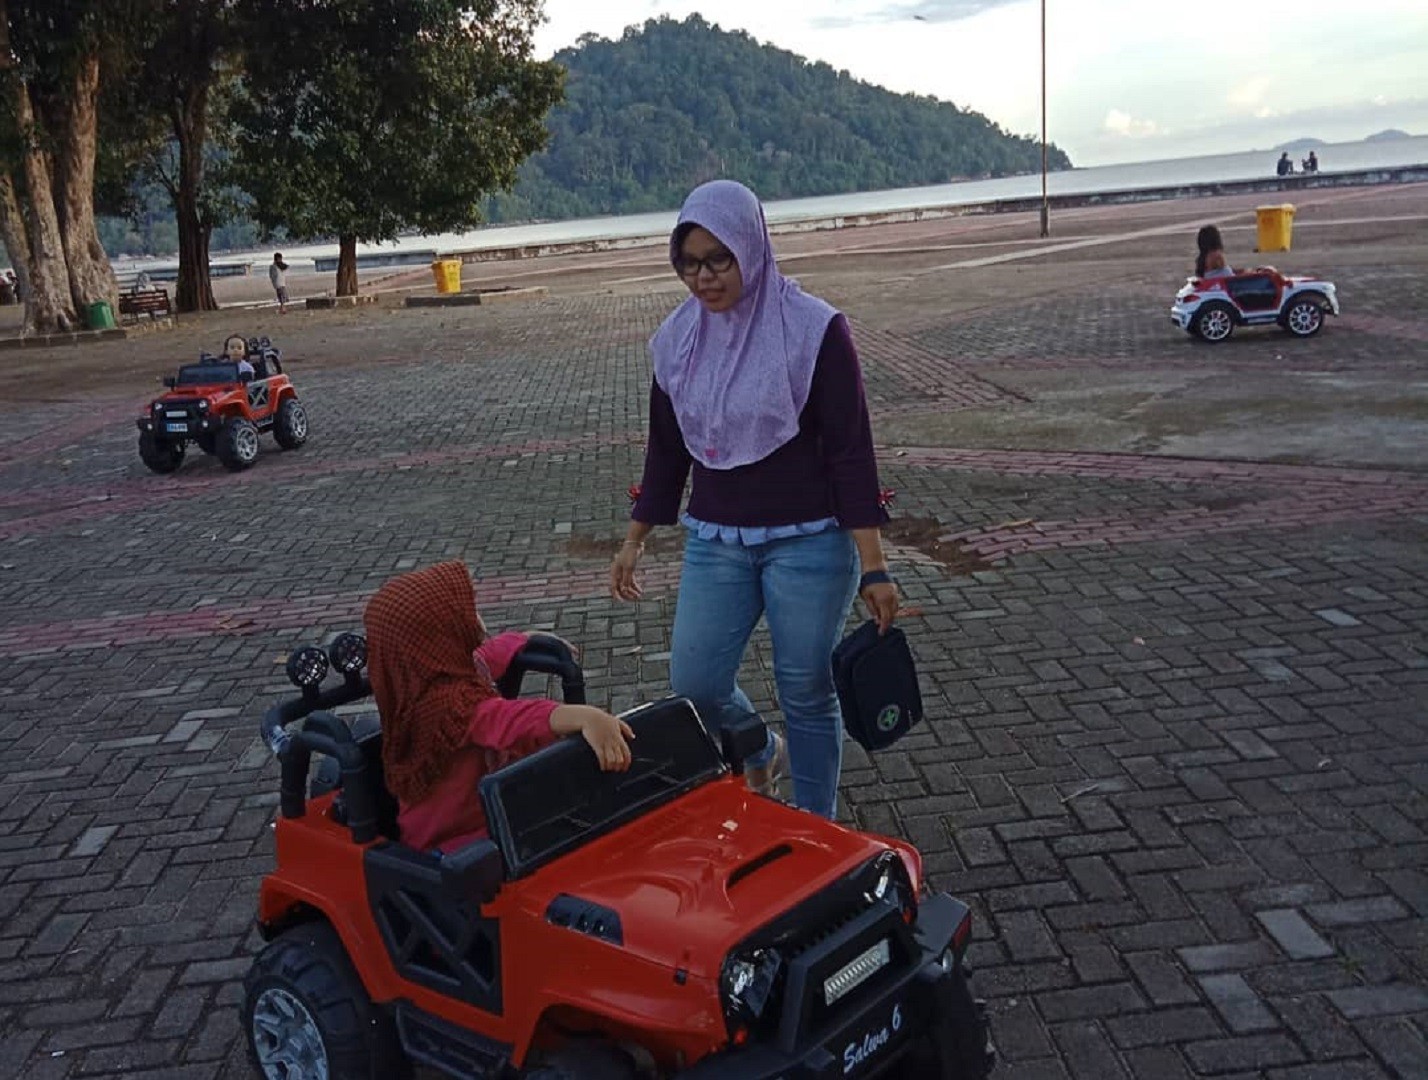 Bermain mobil-mobilan di Pantai Pulau Datok Kayong Utara Kalimantan Barat - riza.umami_